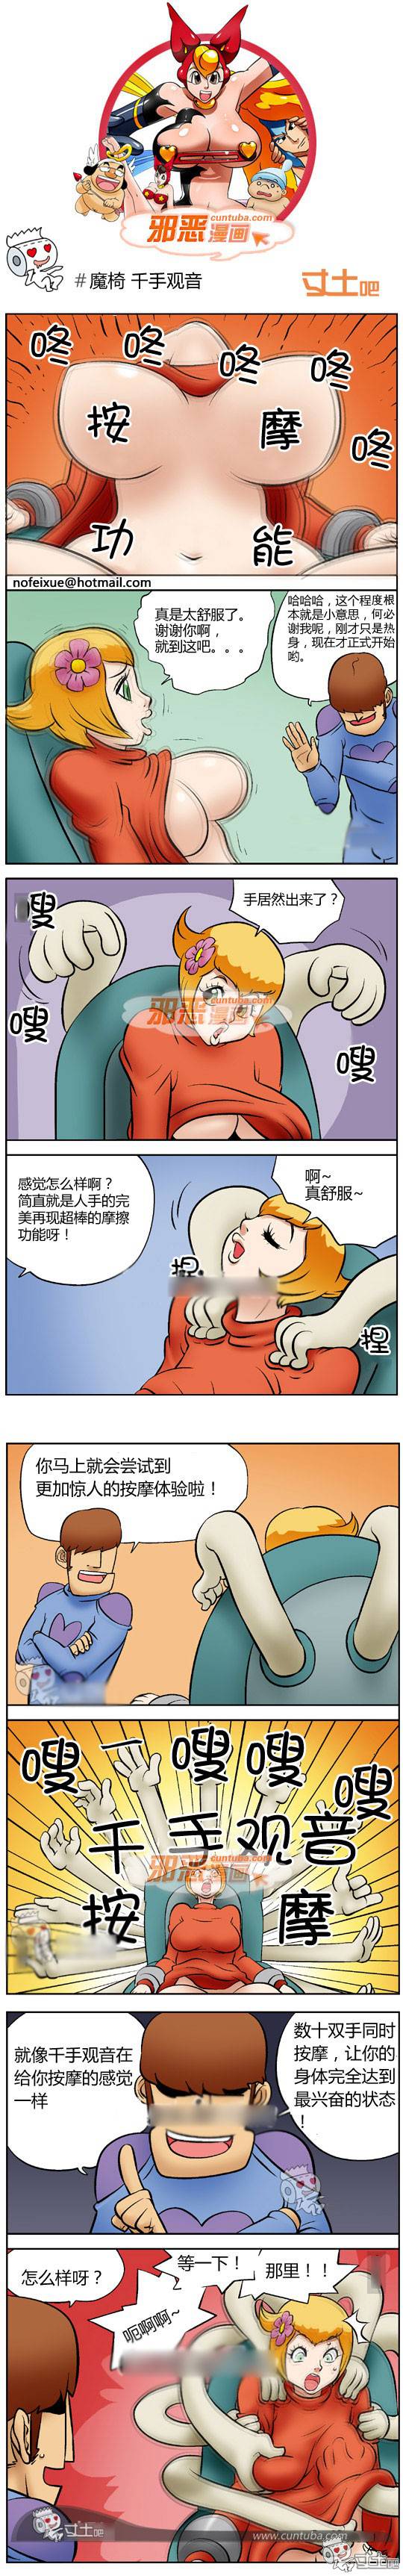 邪恶漫画爆笑囧图第255刊：男人的精力 女人的心力